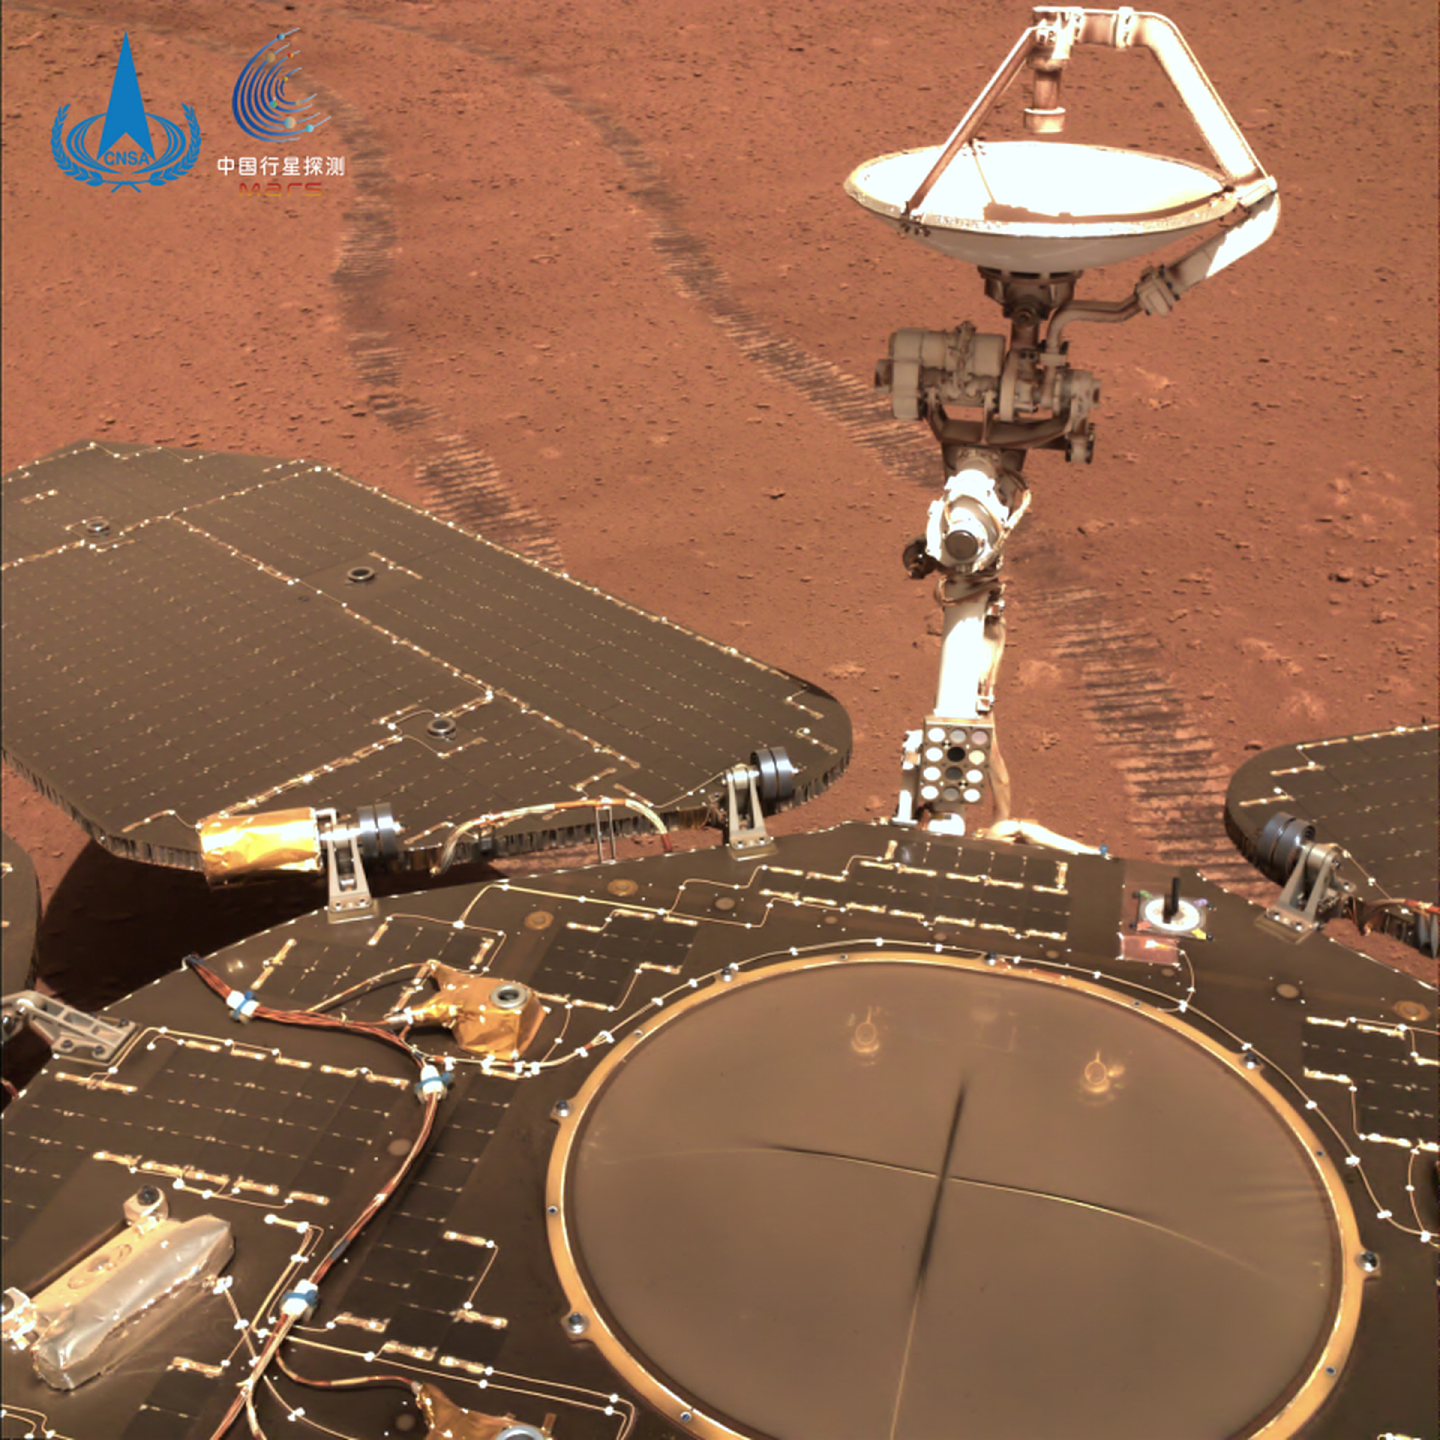 拍摄于2022年1月22日（着陆后第247火星日），火星车表面存在明显的沙尘覆盖。这也是导航地形相机不同时期拍摄火星车本体影像对比。（微信@中国探月工程）